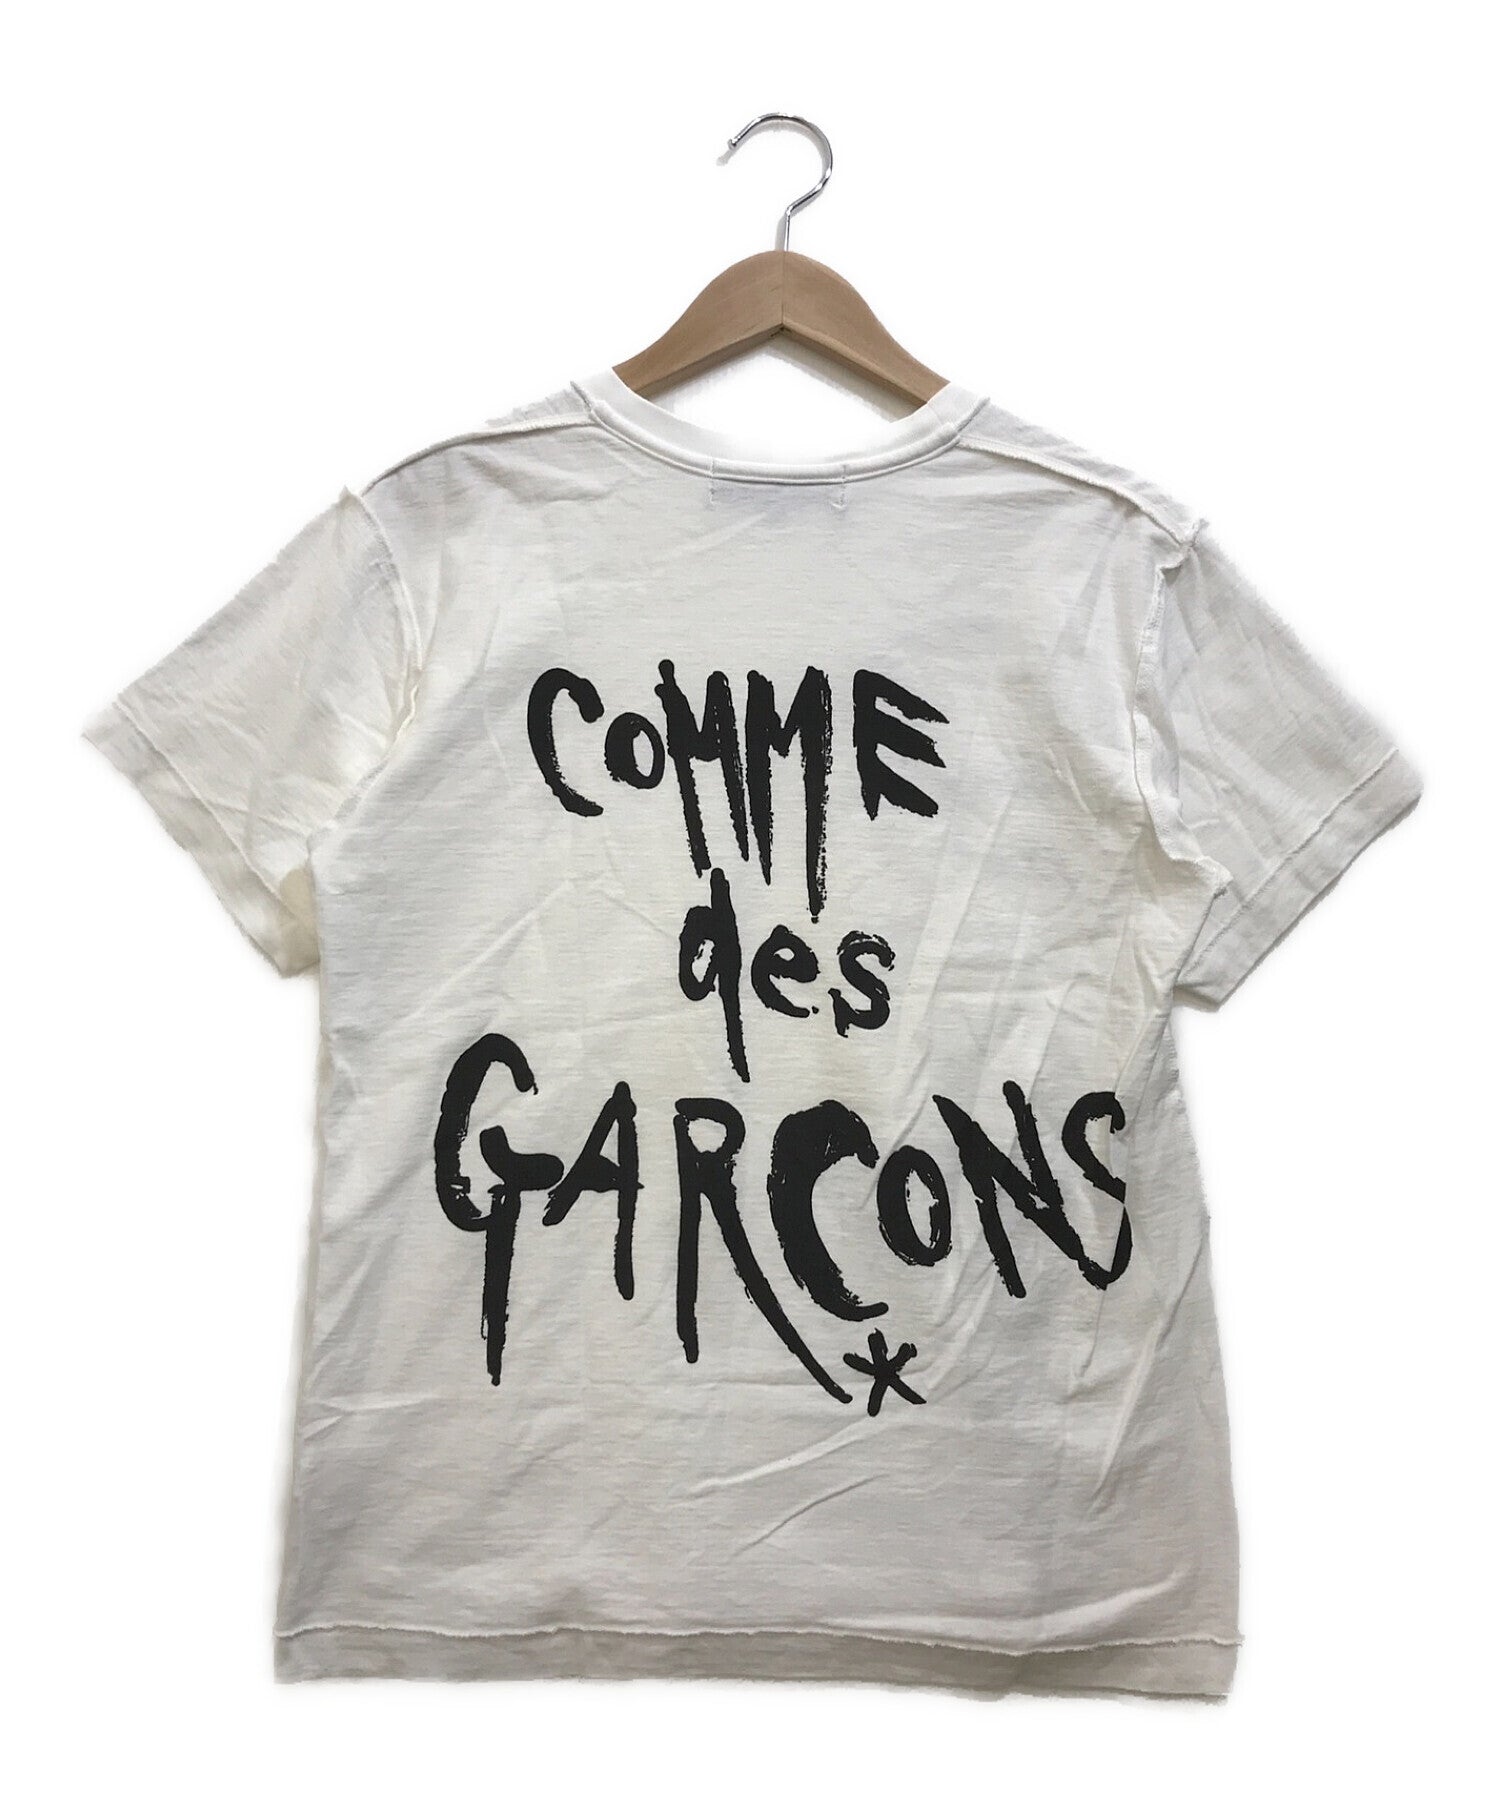 COMME des GARCONS BLACKMARKET Chic Punk printed T-shirt (Chic Punk 